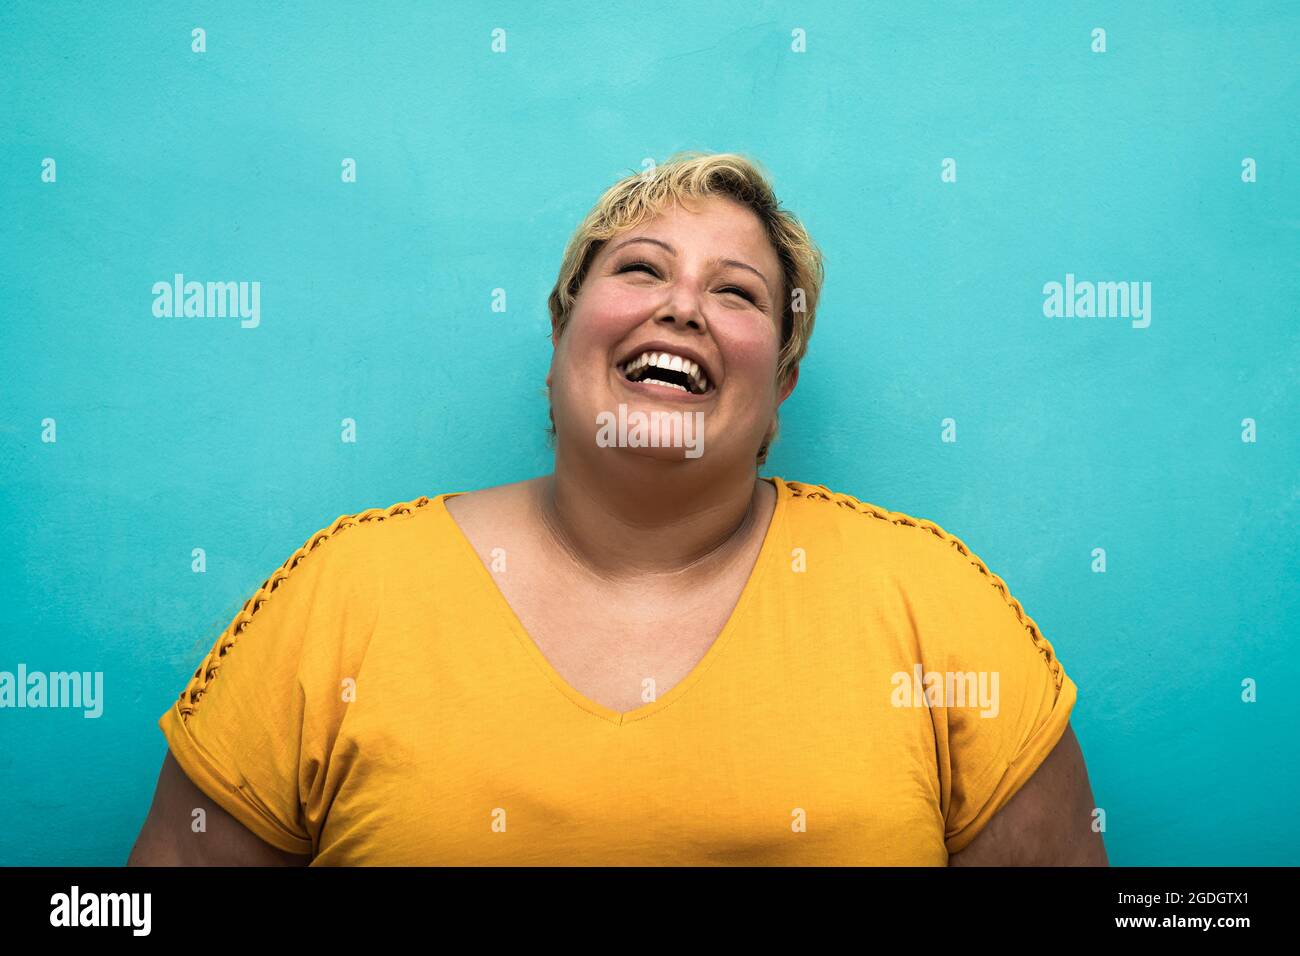 Happy plus size smiling woman portrait Stock Photo